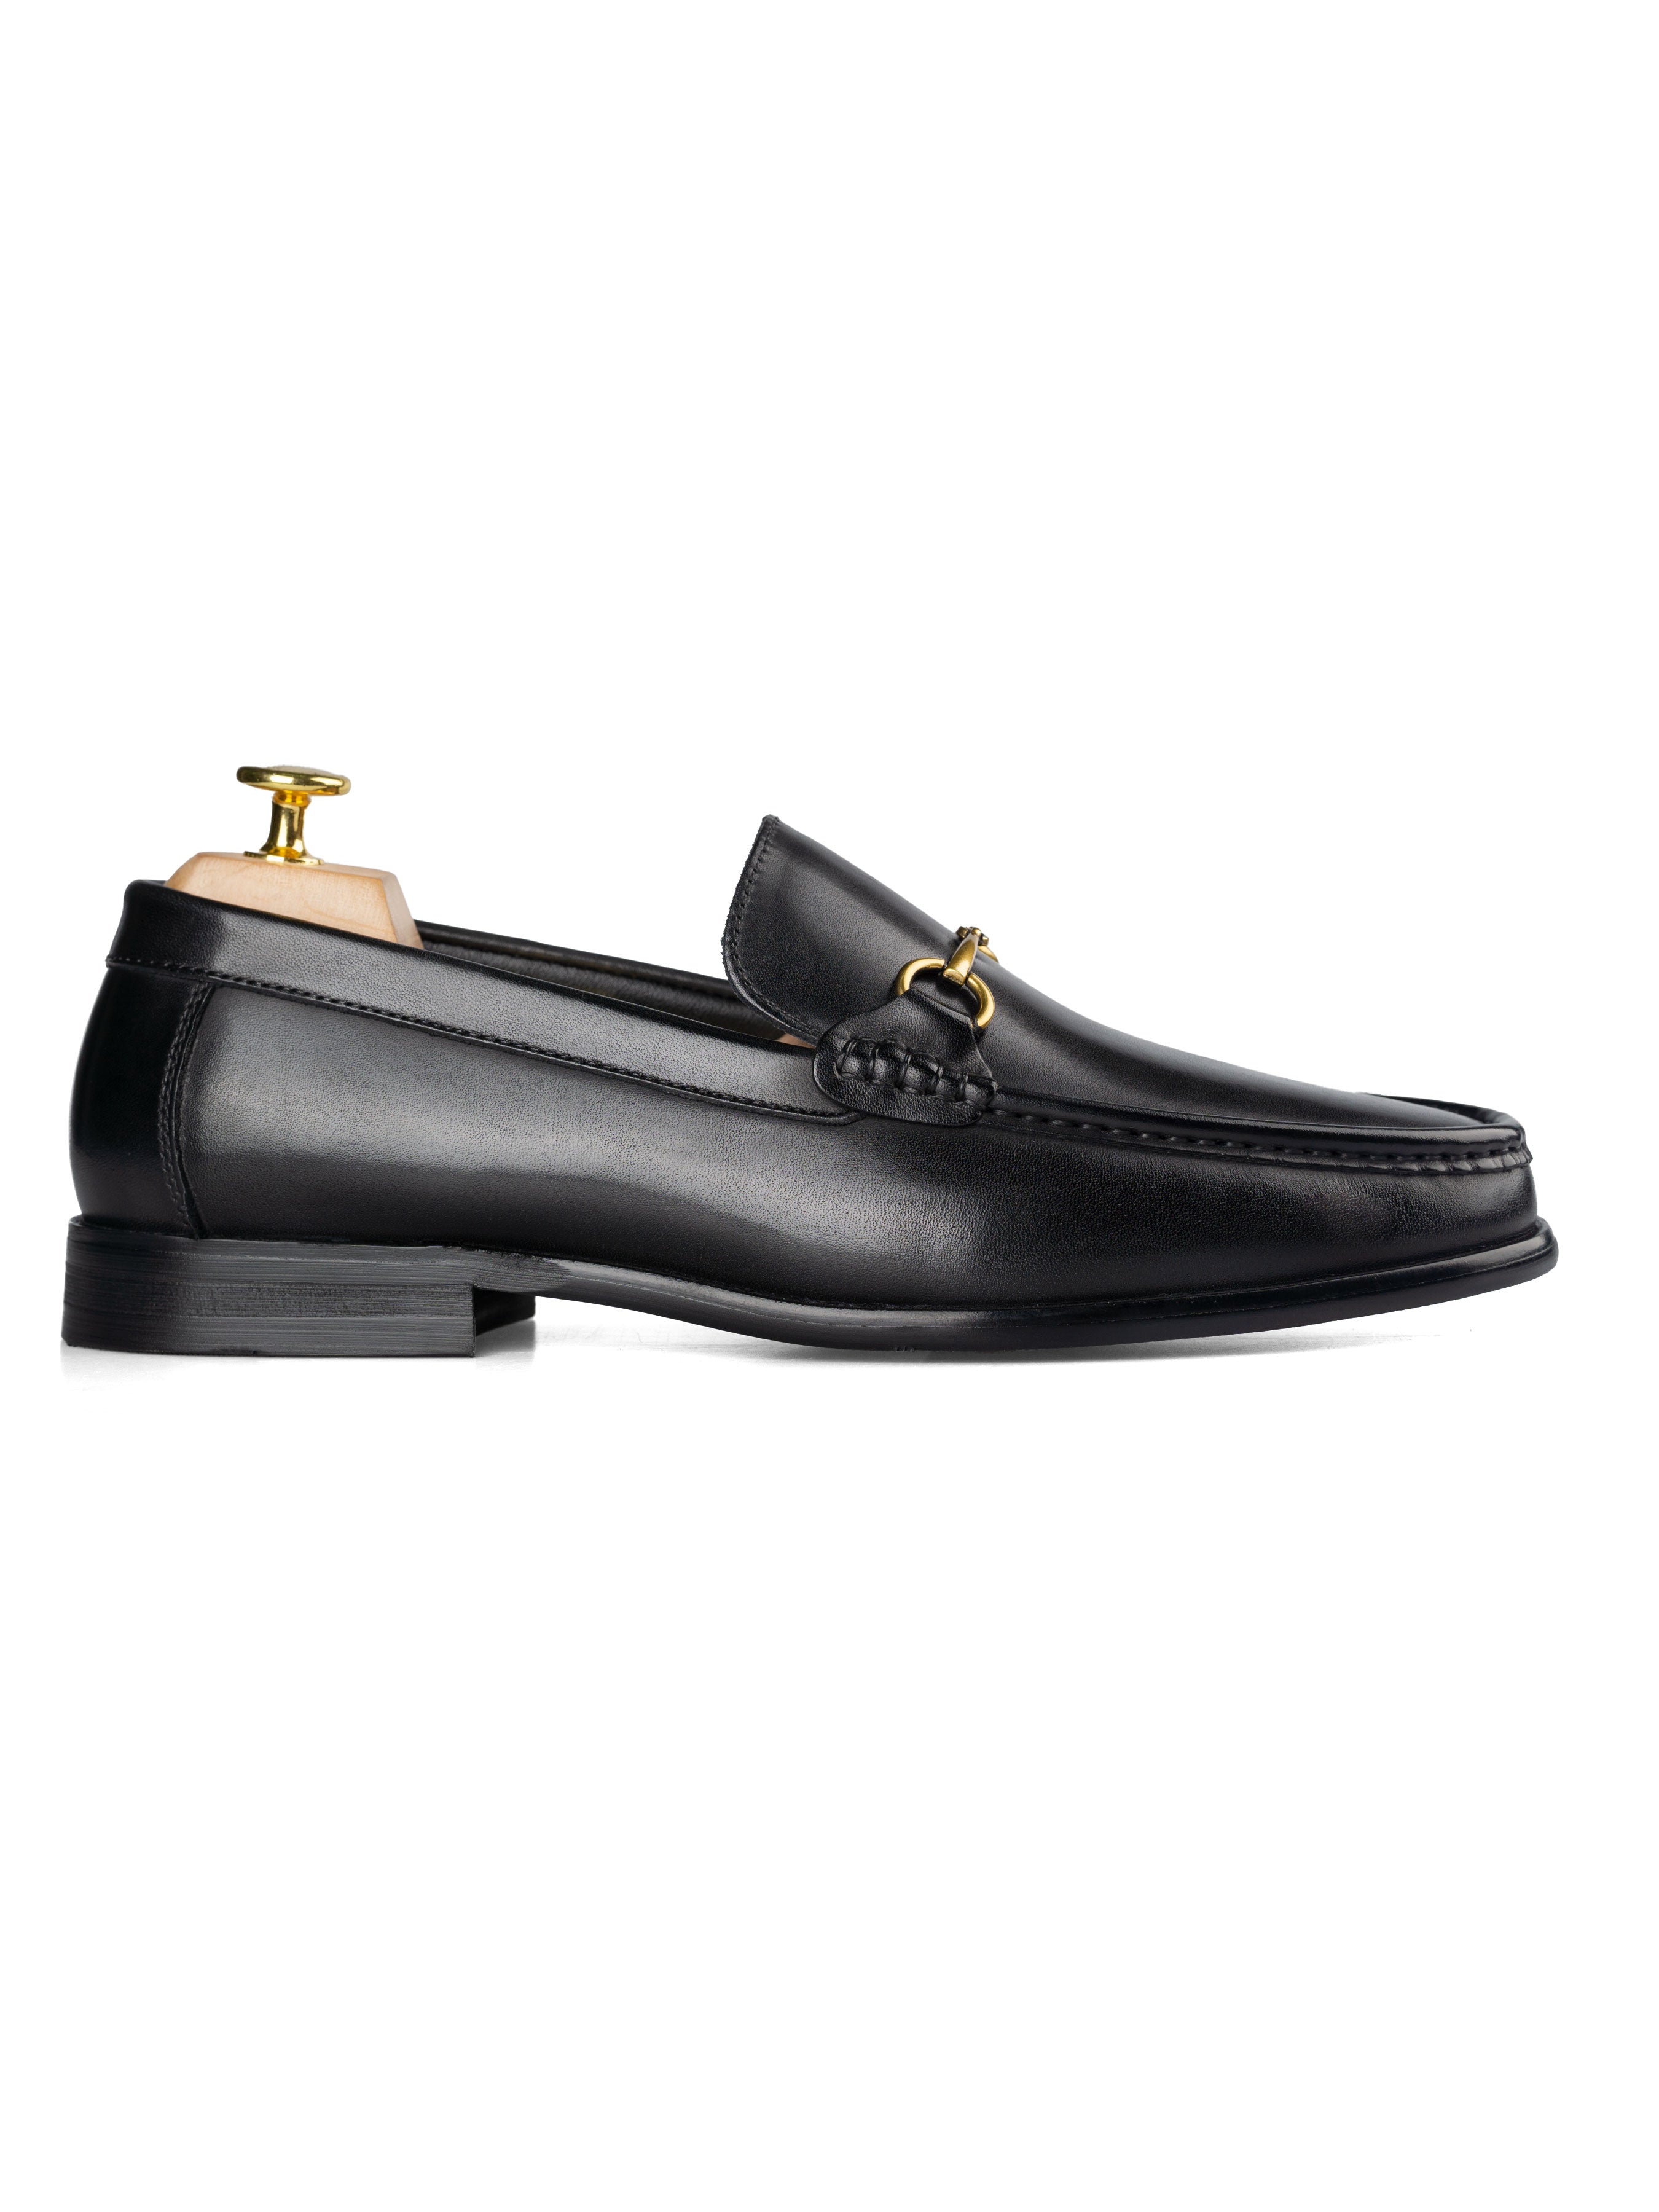 Horsebit Moccasin Loafer - Solid Black - Zeve Shoes